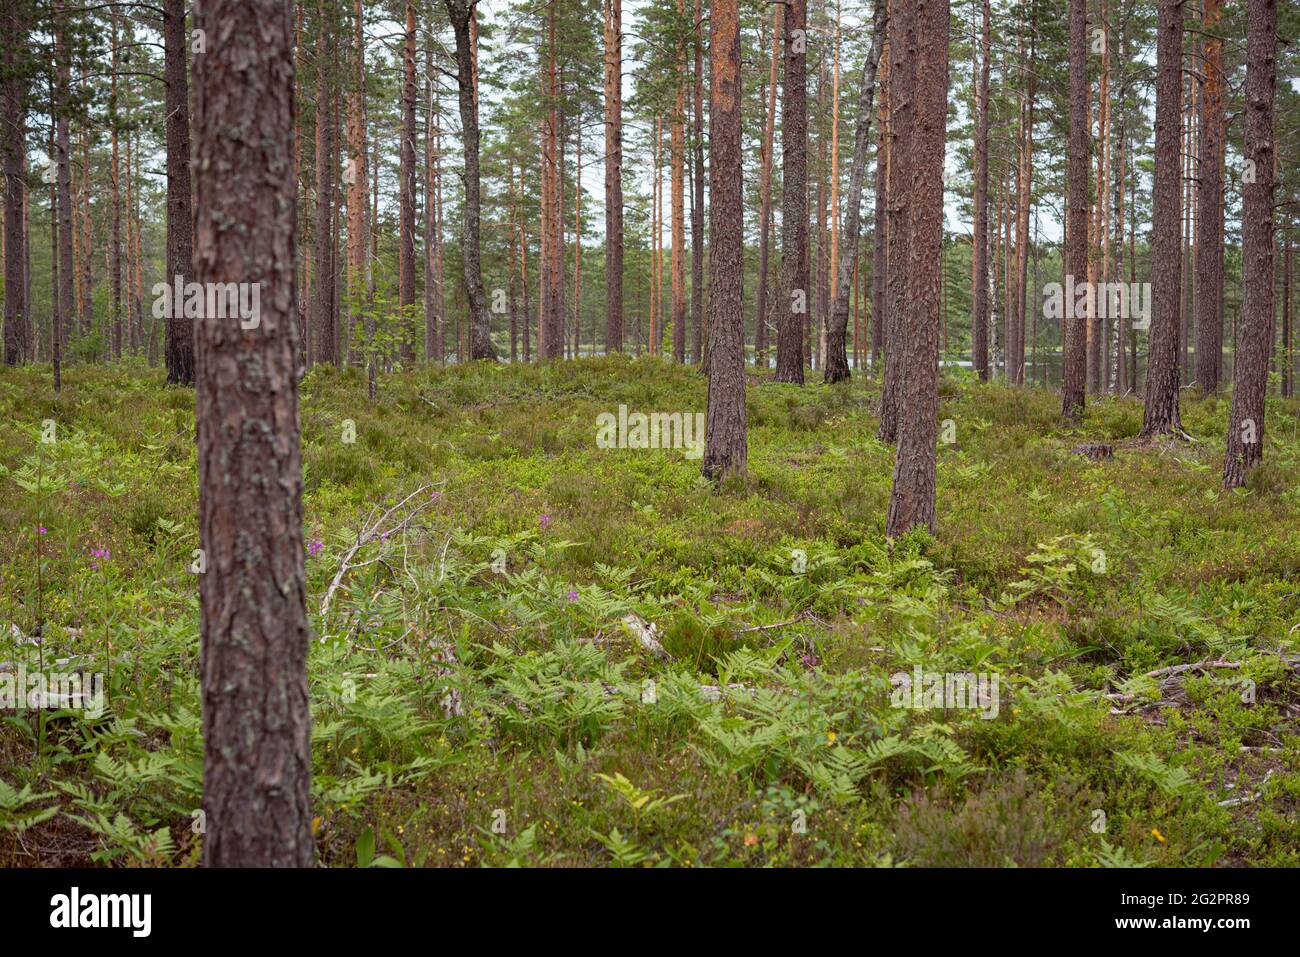 Forêt boréale de bleuets : pins avec fougères et bleuets au sol. Banque D'Images